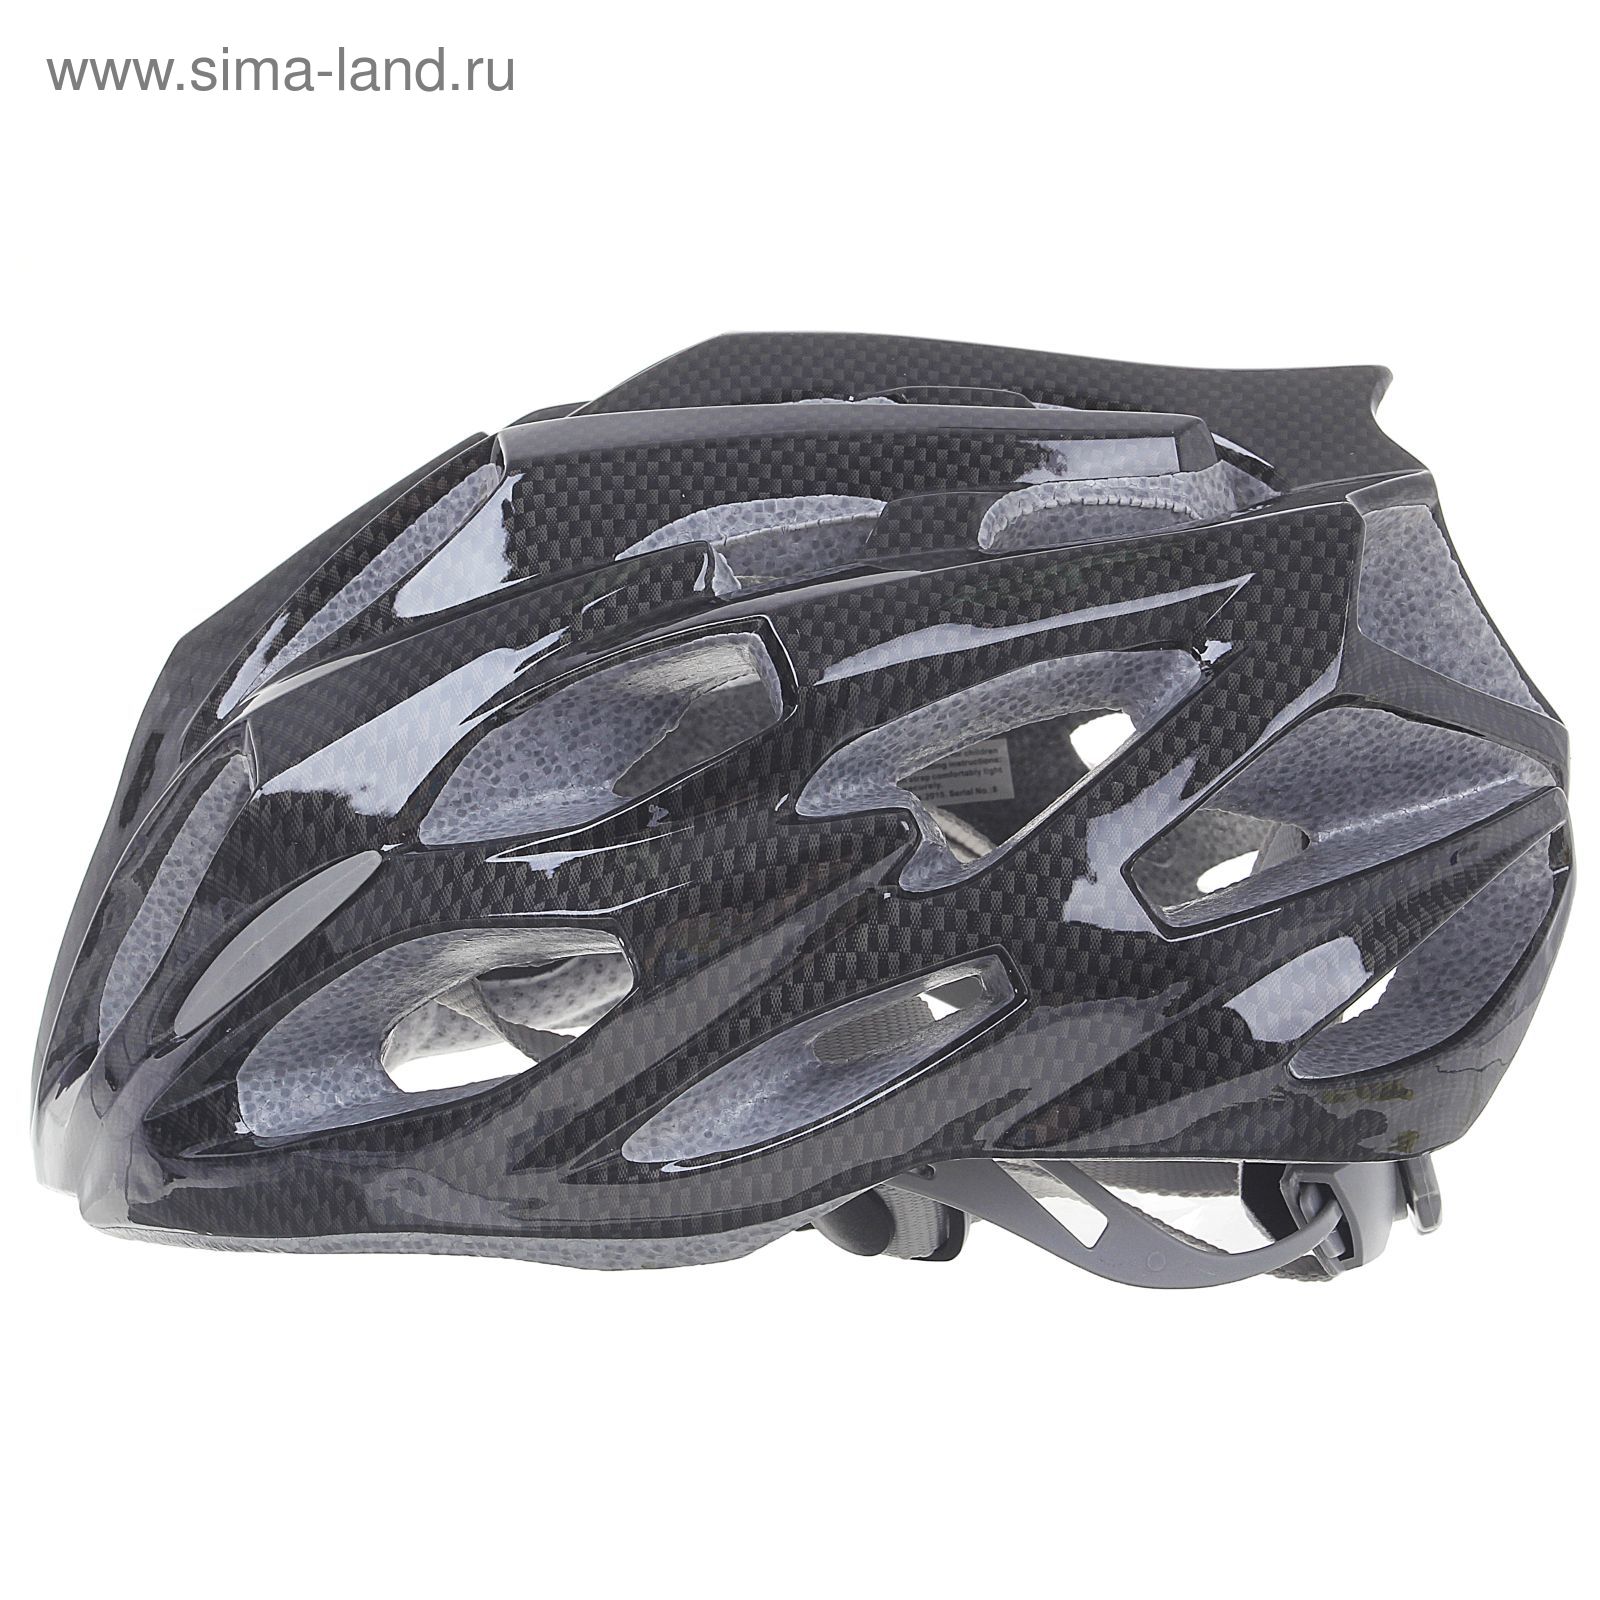 Шлем велосипедиста взрослый ОТ-T28, черный, диаметр 54 см